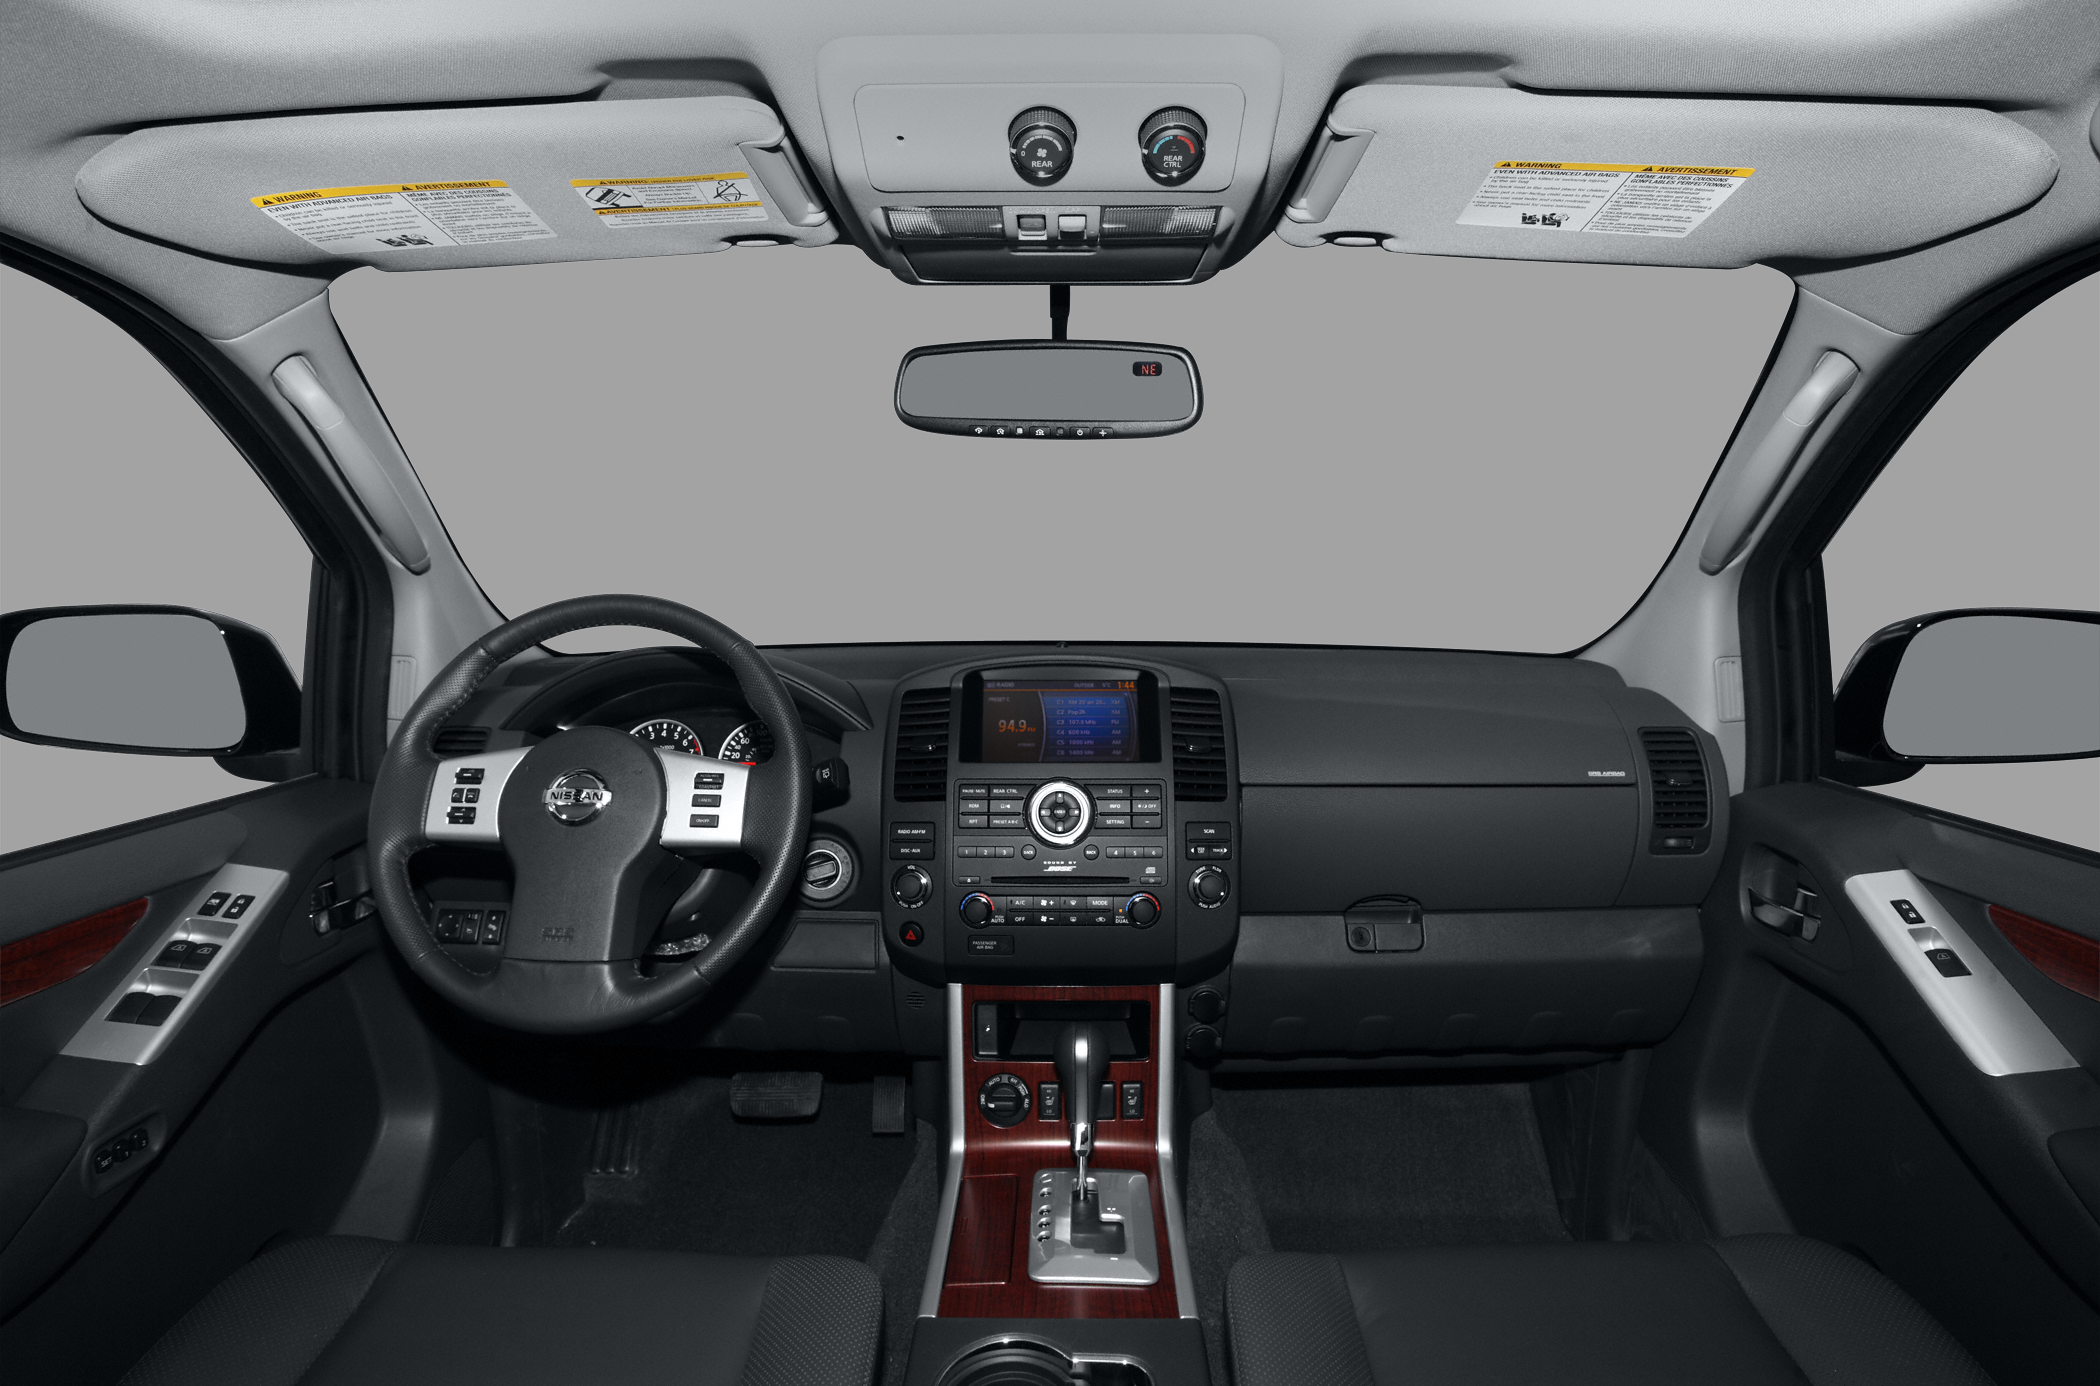 2010 Nissan Pathfinder